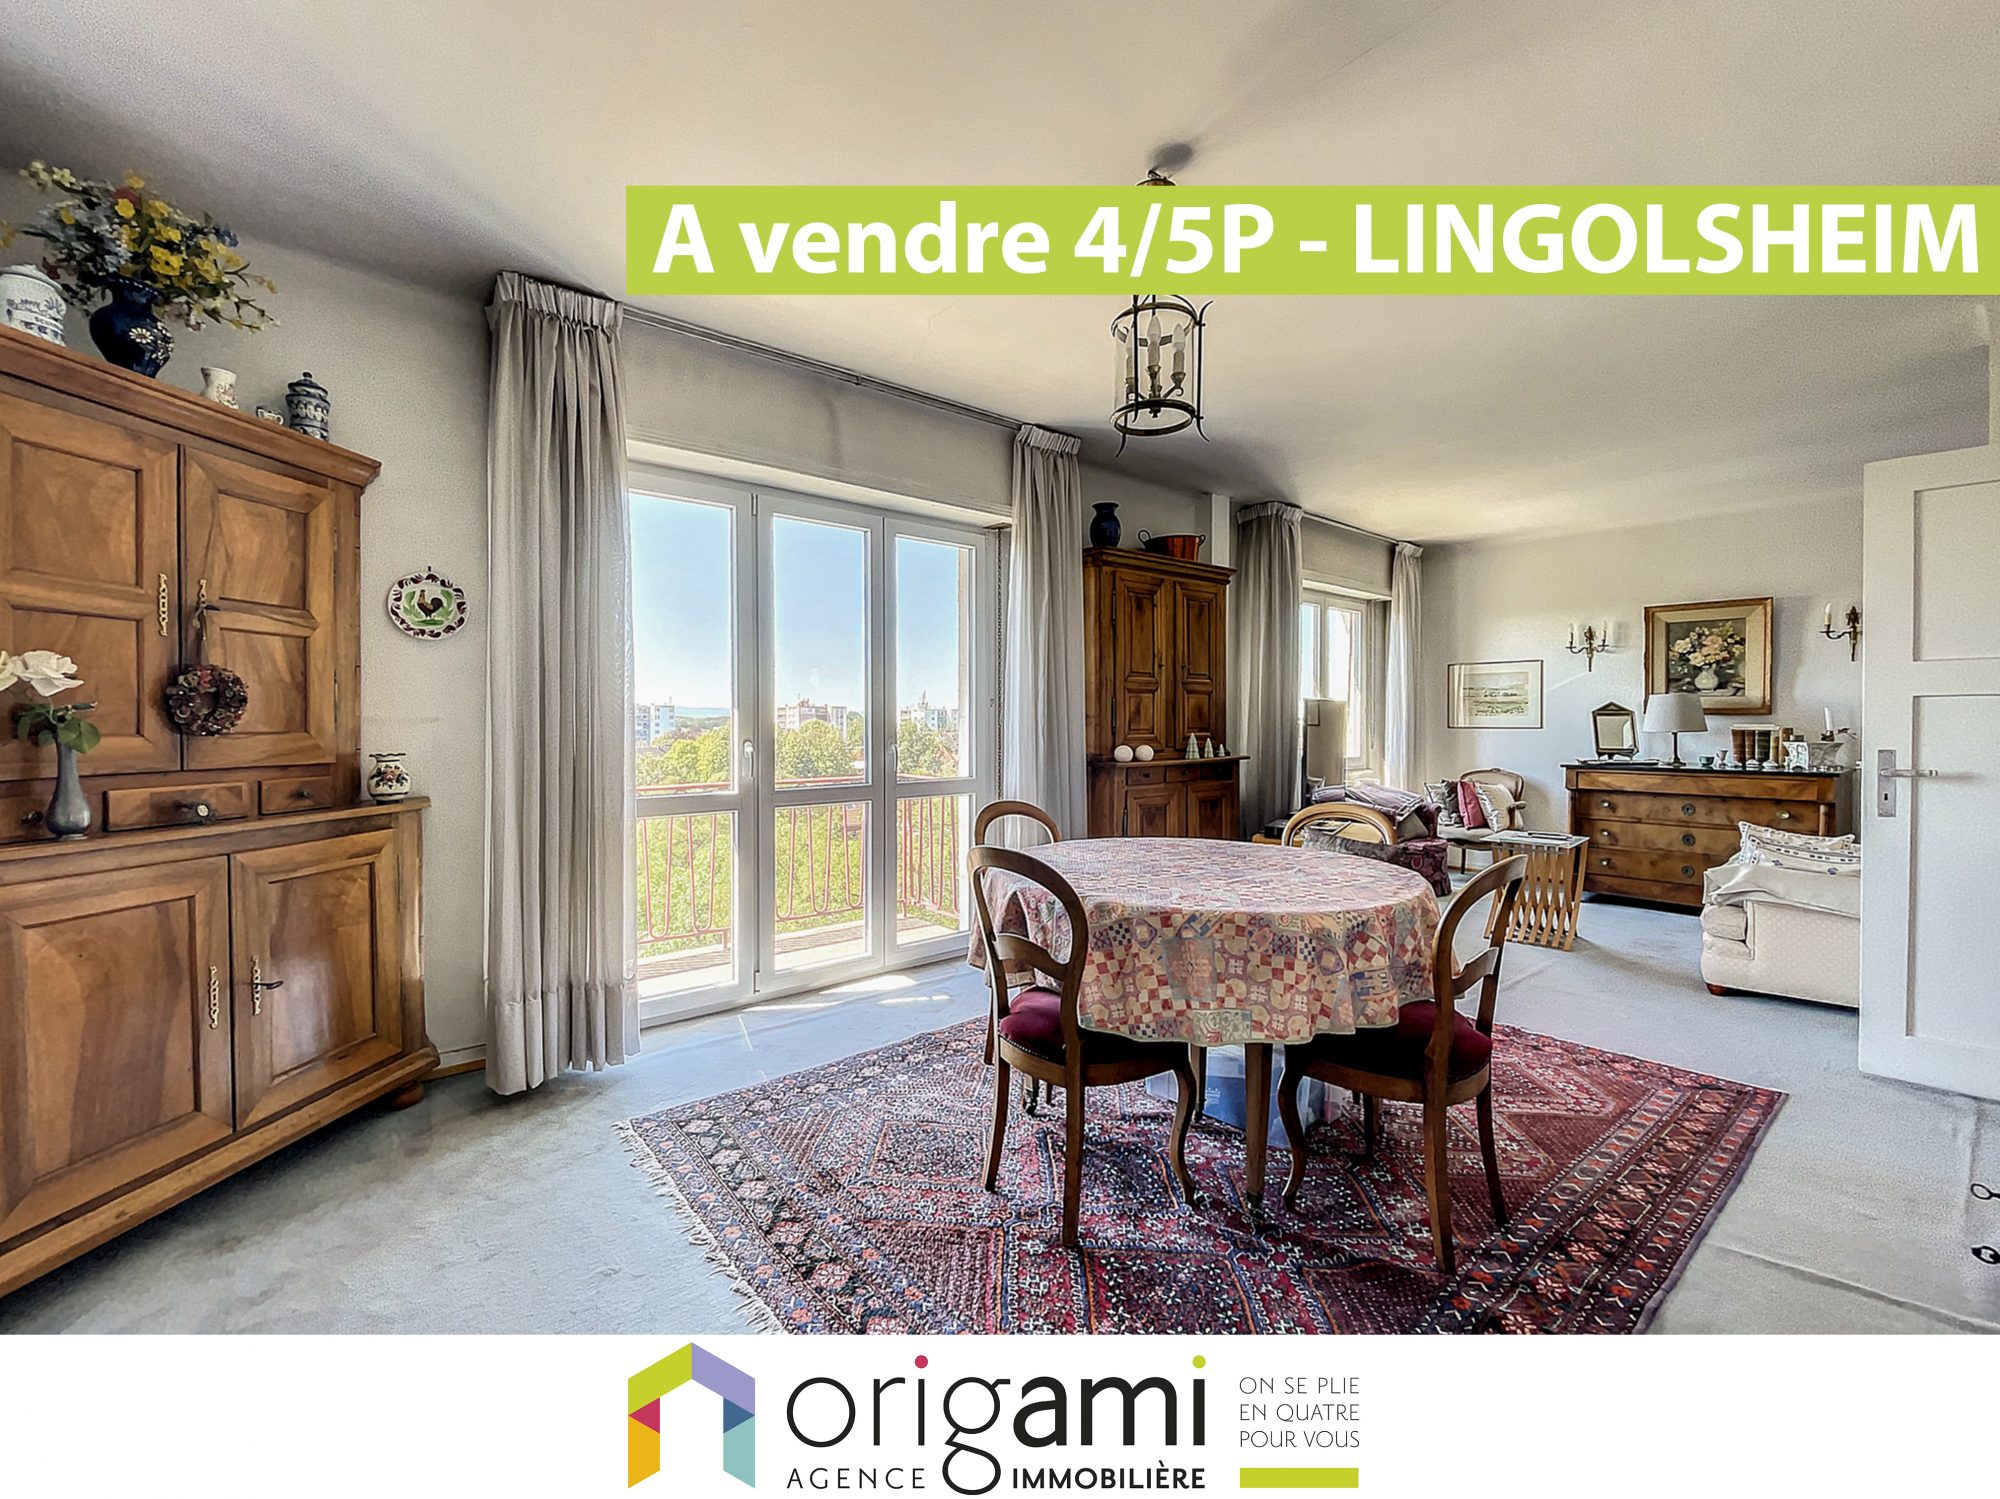 Vente Appartement 97m² 5 Pièces à Lingolsheim (67380) - Origami